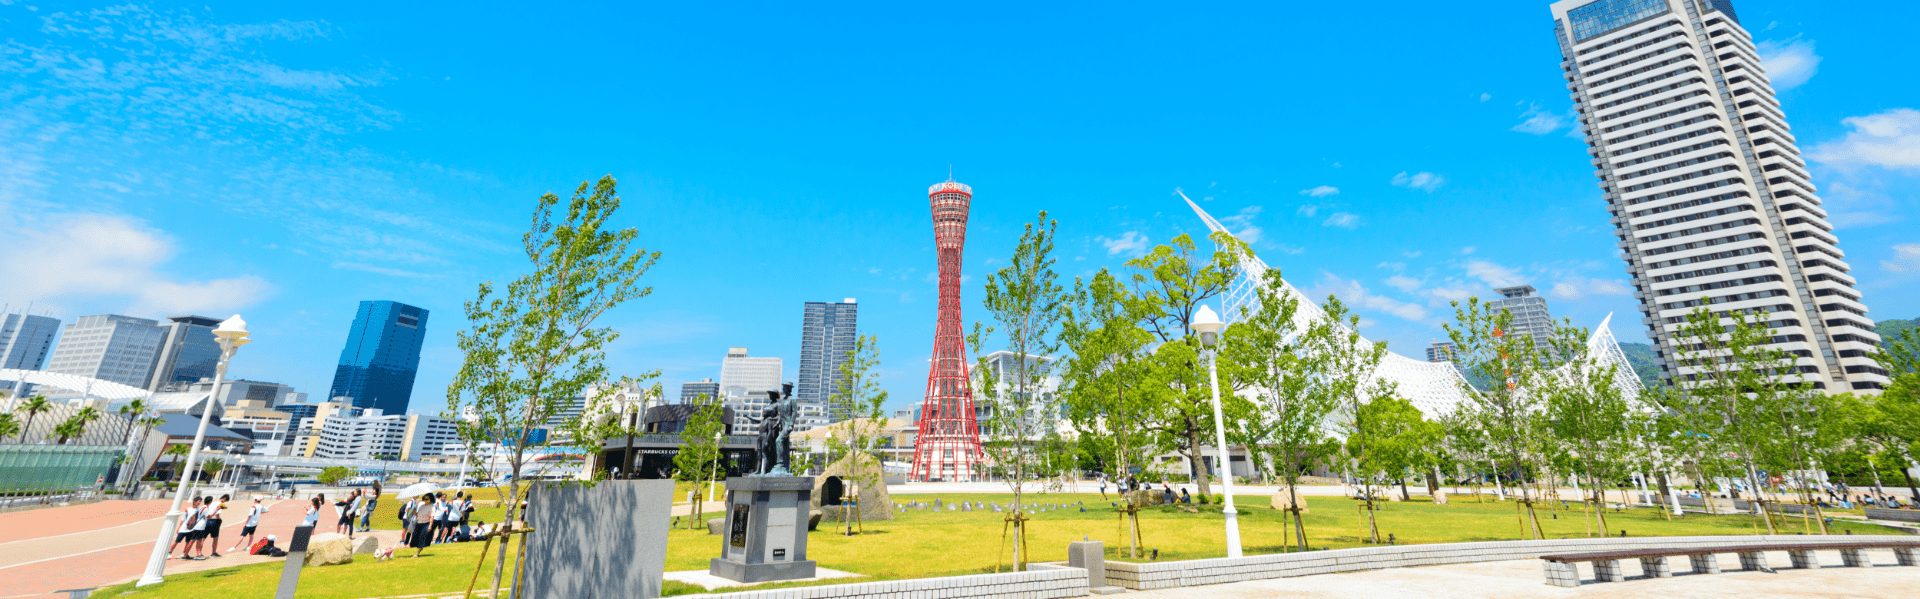 神戸観光局認定 ガイドツアー Feel Kobe 神戸公式観光サイト